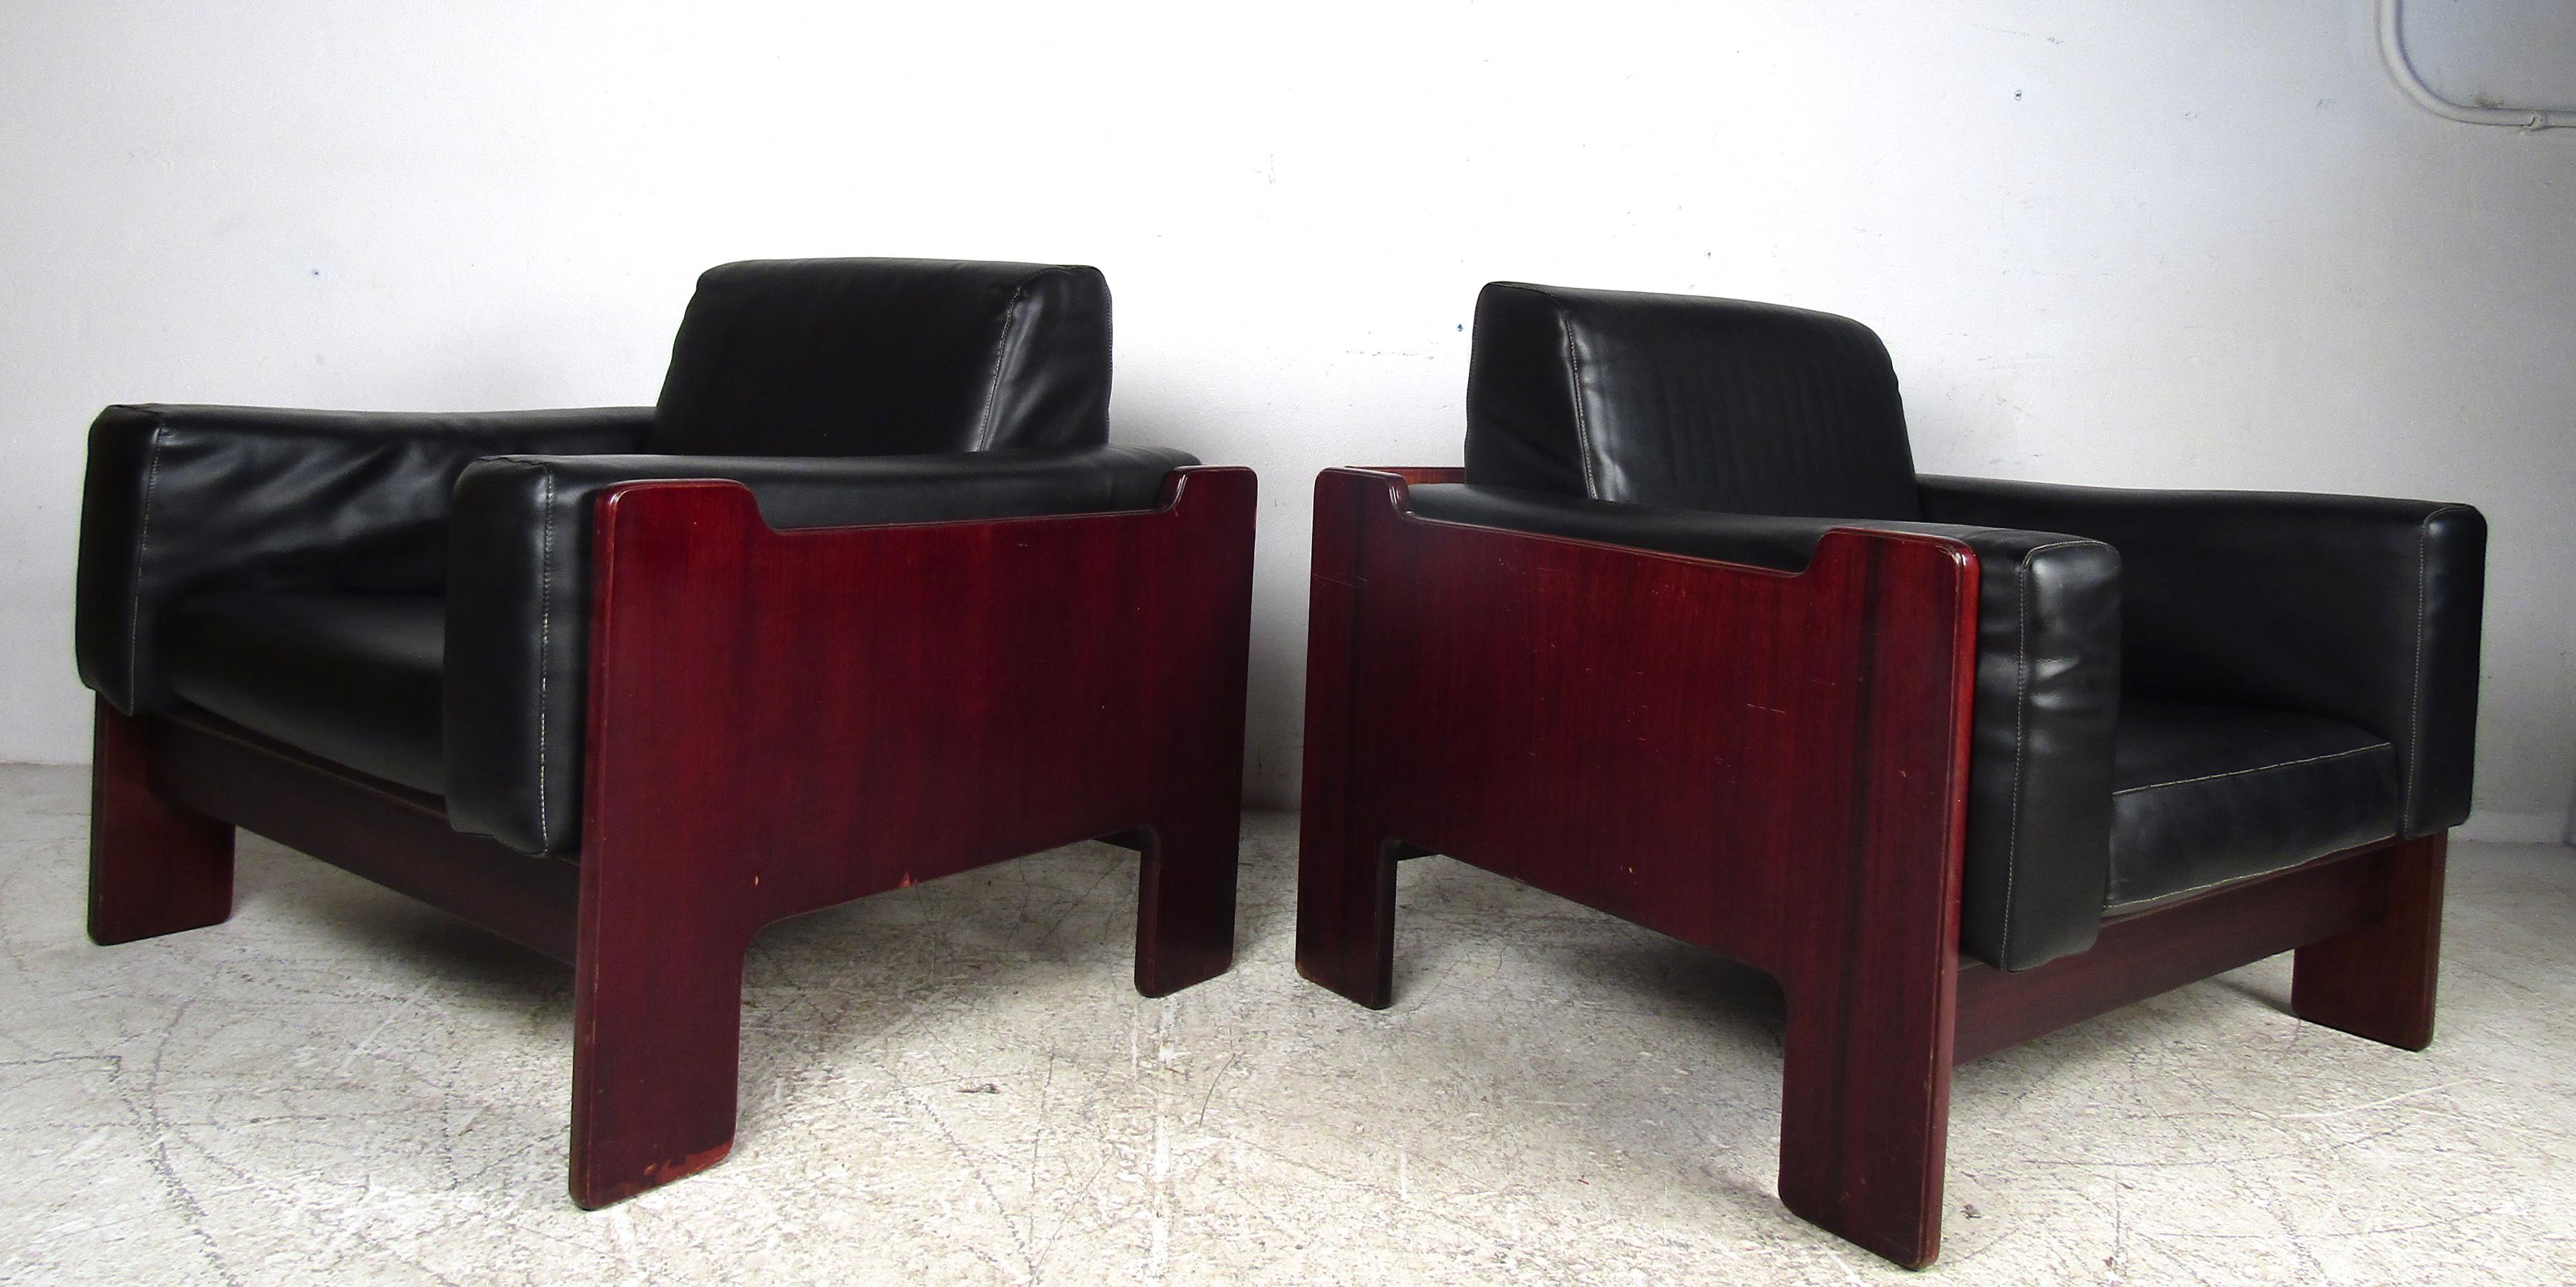 Dieses atemberaubende Paar Mid-Century Modern Lounge Chairs hat eine bequeme Würfelform mit übergepolsterten, abnehmbaren Kissen, die mit schwarzem Vinyl bezogen sind. Ein elegantes und robustes Design, das in jeder modernen Einrichtung einen